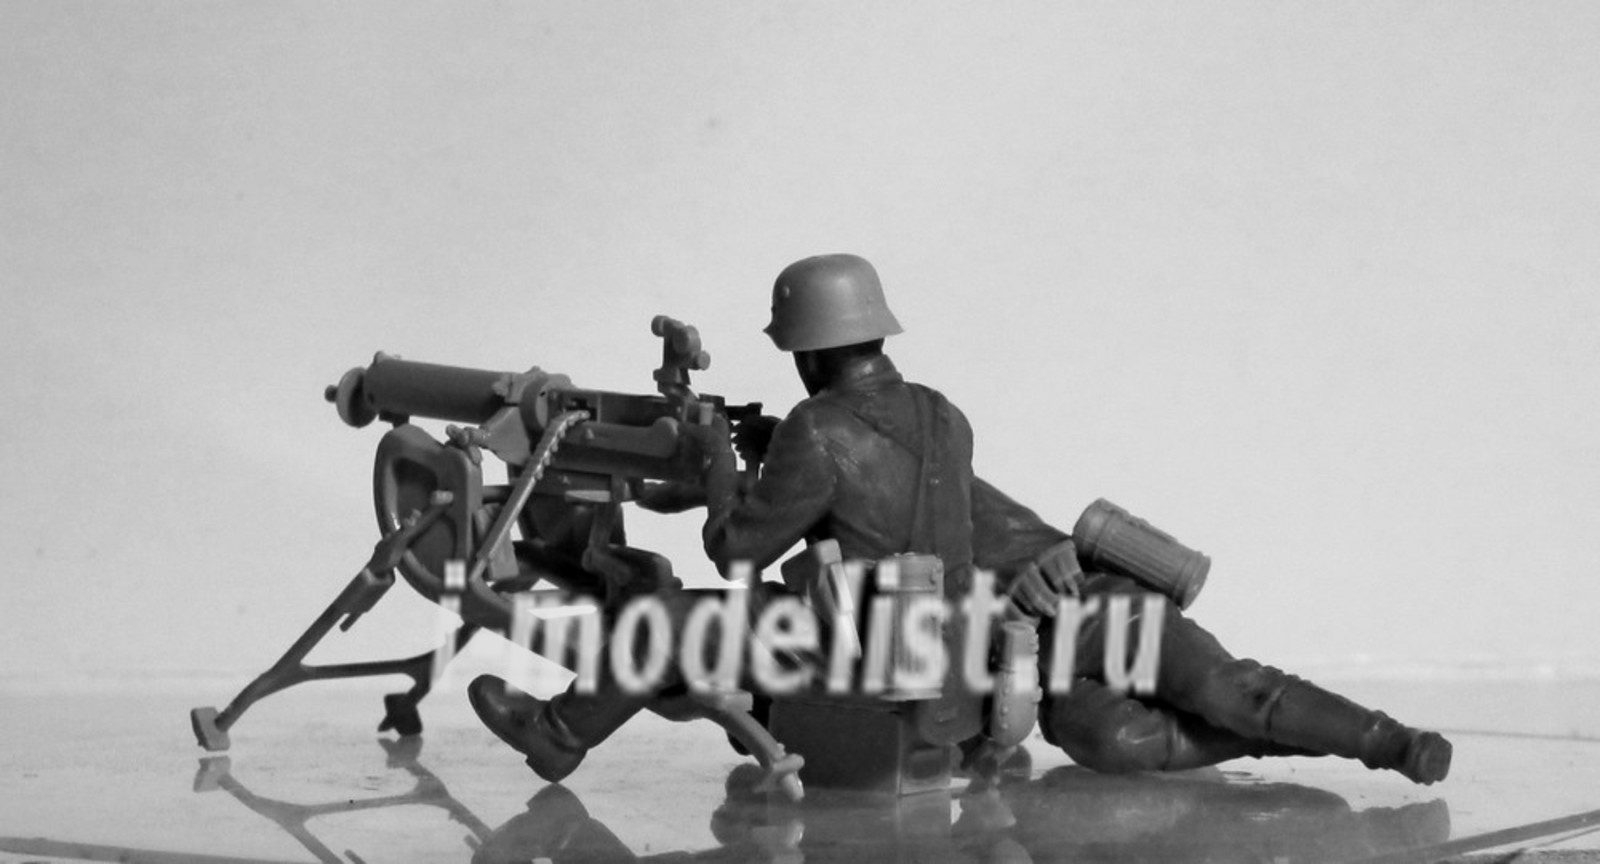 35645 ICM 1/35 Германский пулеметный расчет II МВ (2 фигуры)